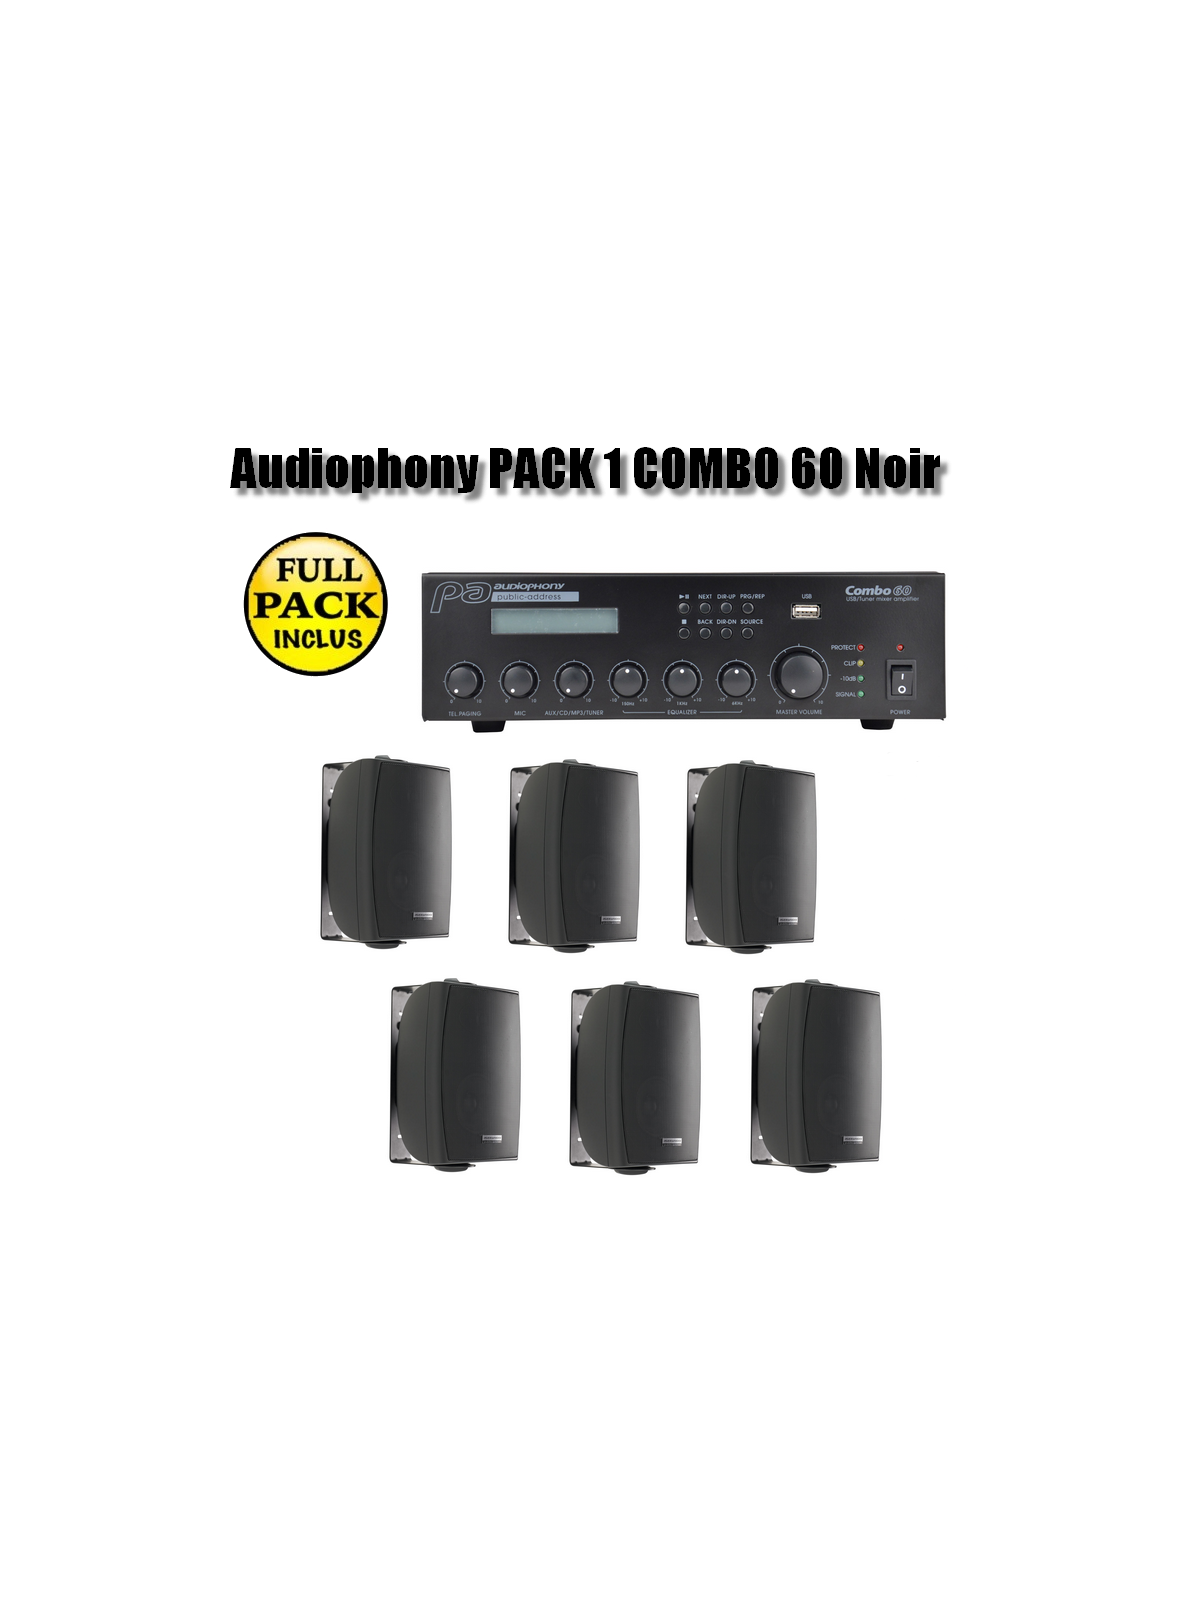 Audiophony PACK 1 COMBO 60 Noir